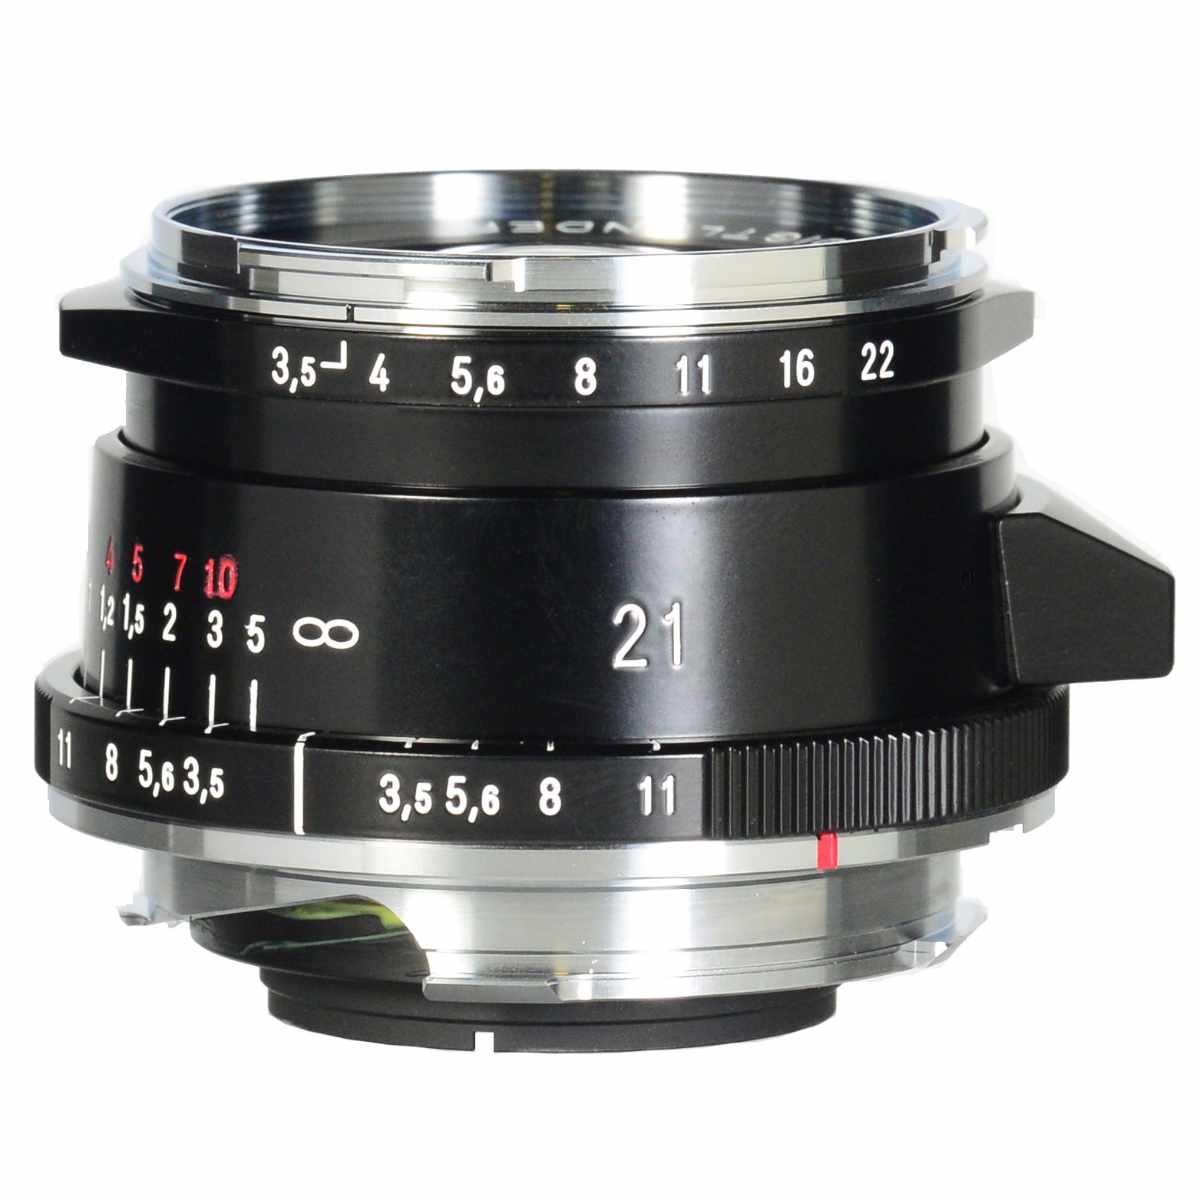 Voigtlaender Color-Skopar 21mm f/3.5 Aspherical II VL Black Leica-M